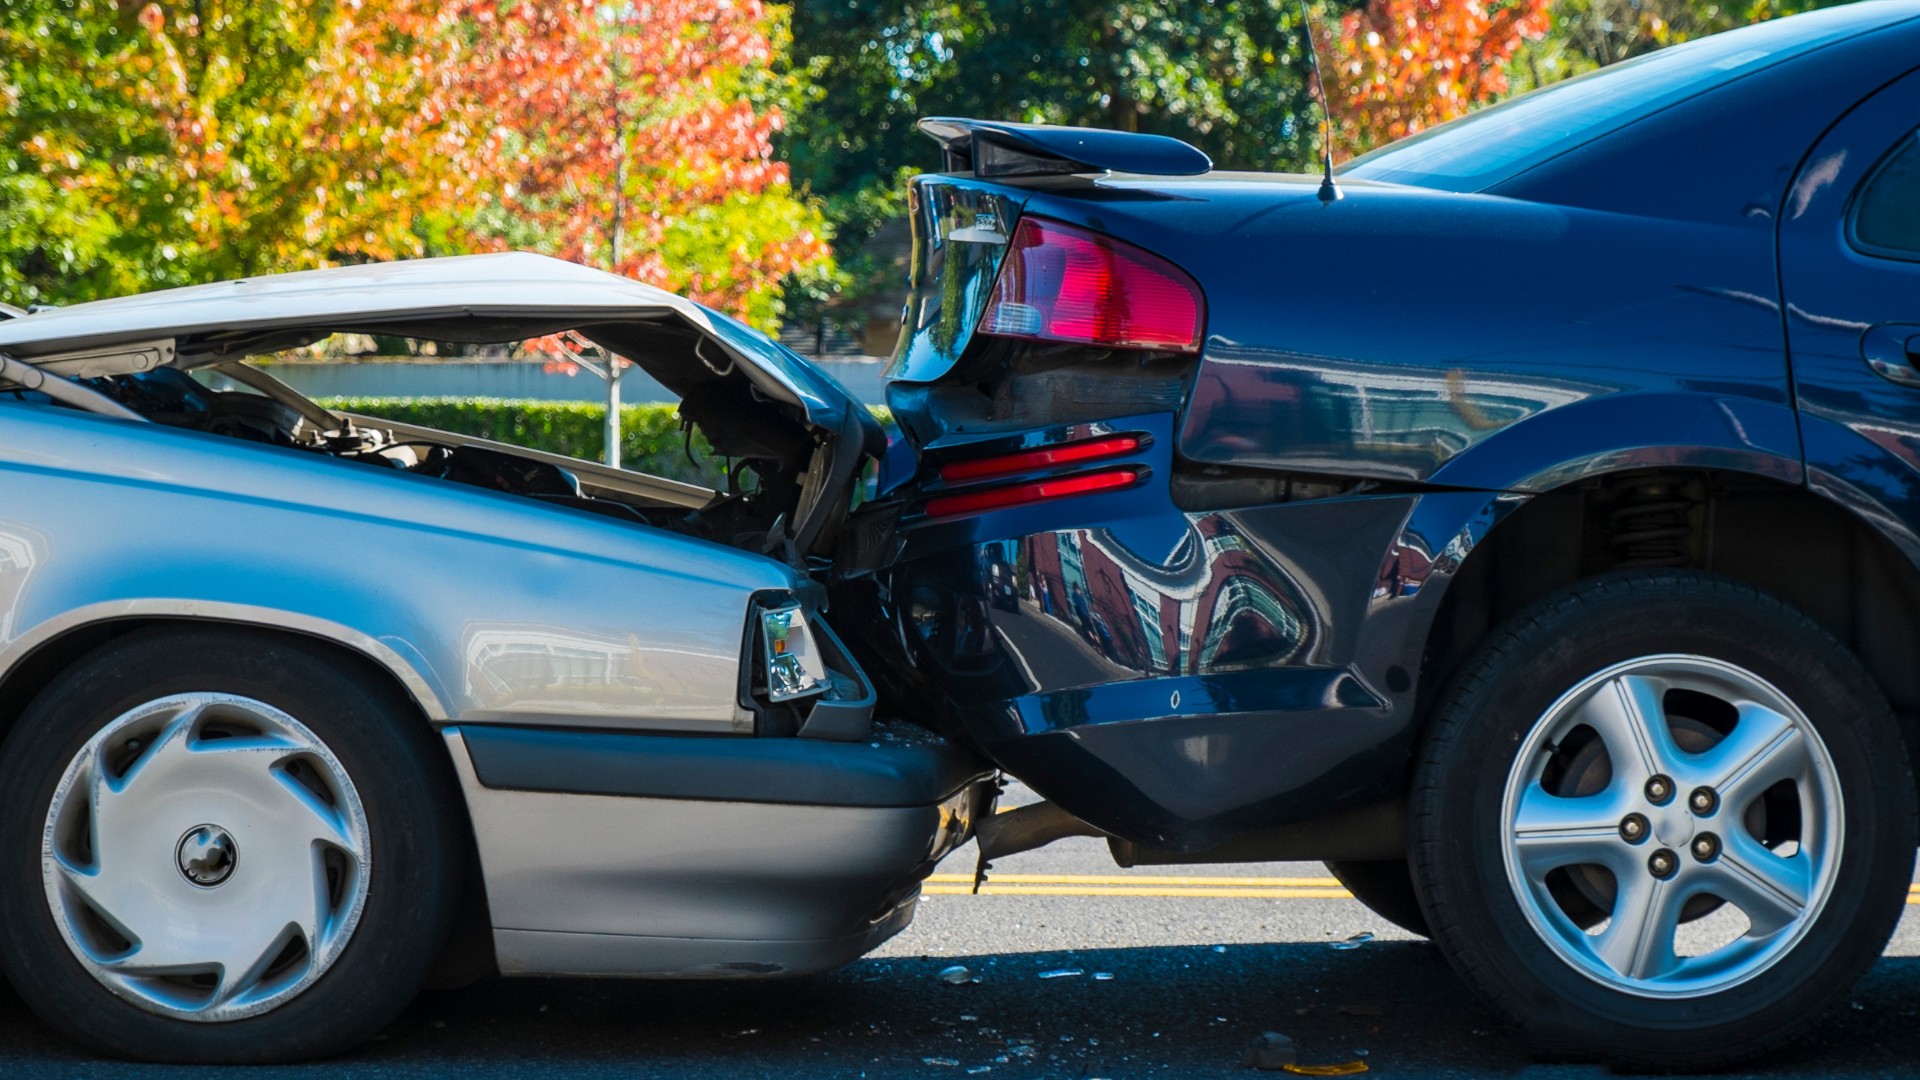 Auto Accident Checklist